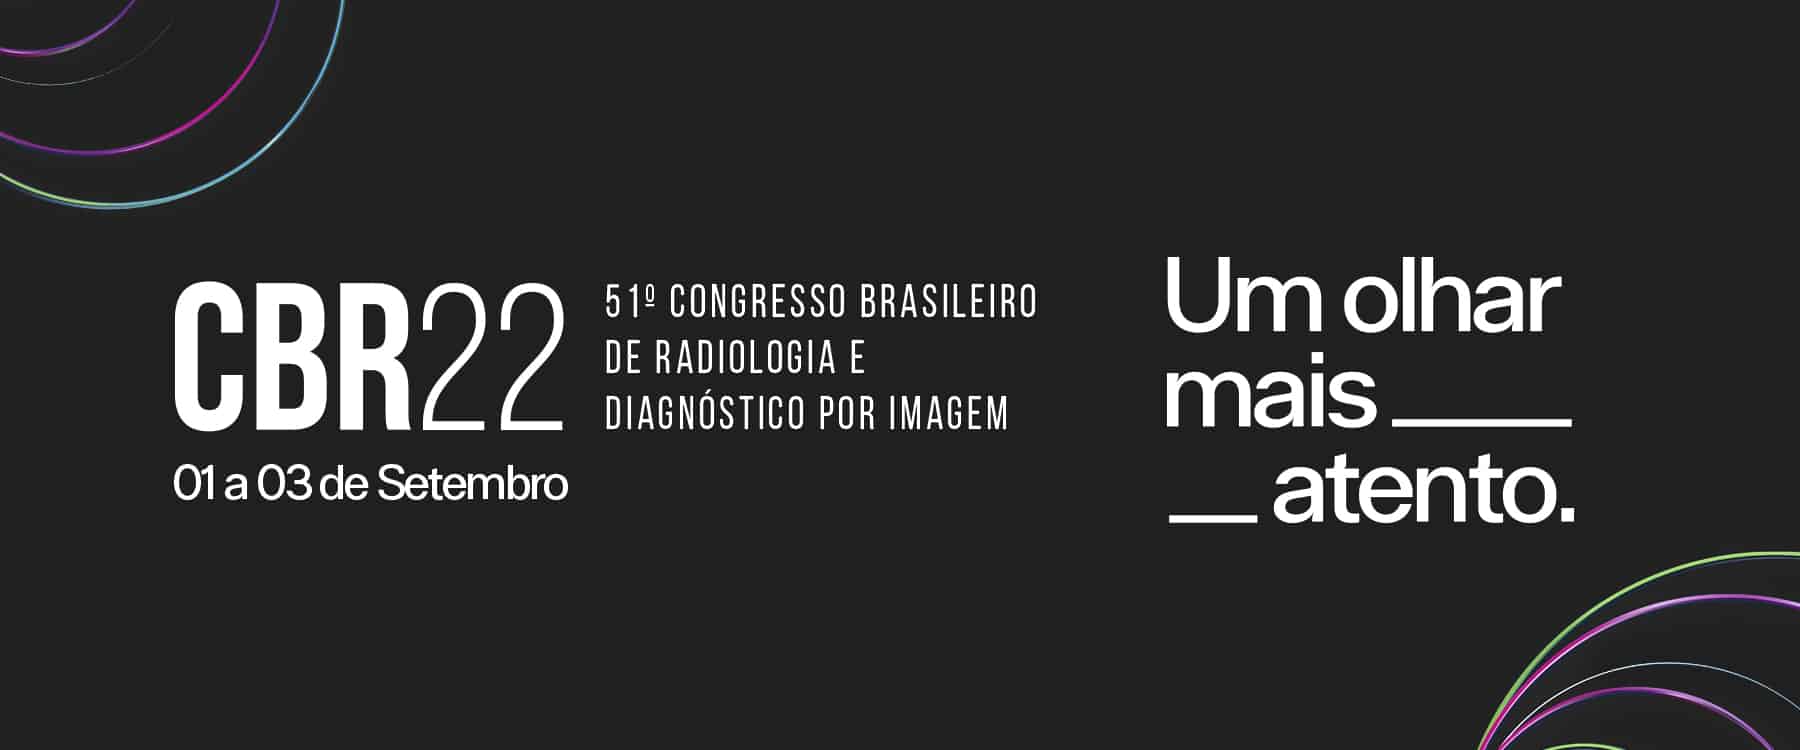 congresso cbr22 congresso brasileiro de radiologia radiologistas